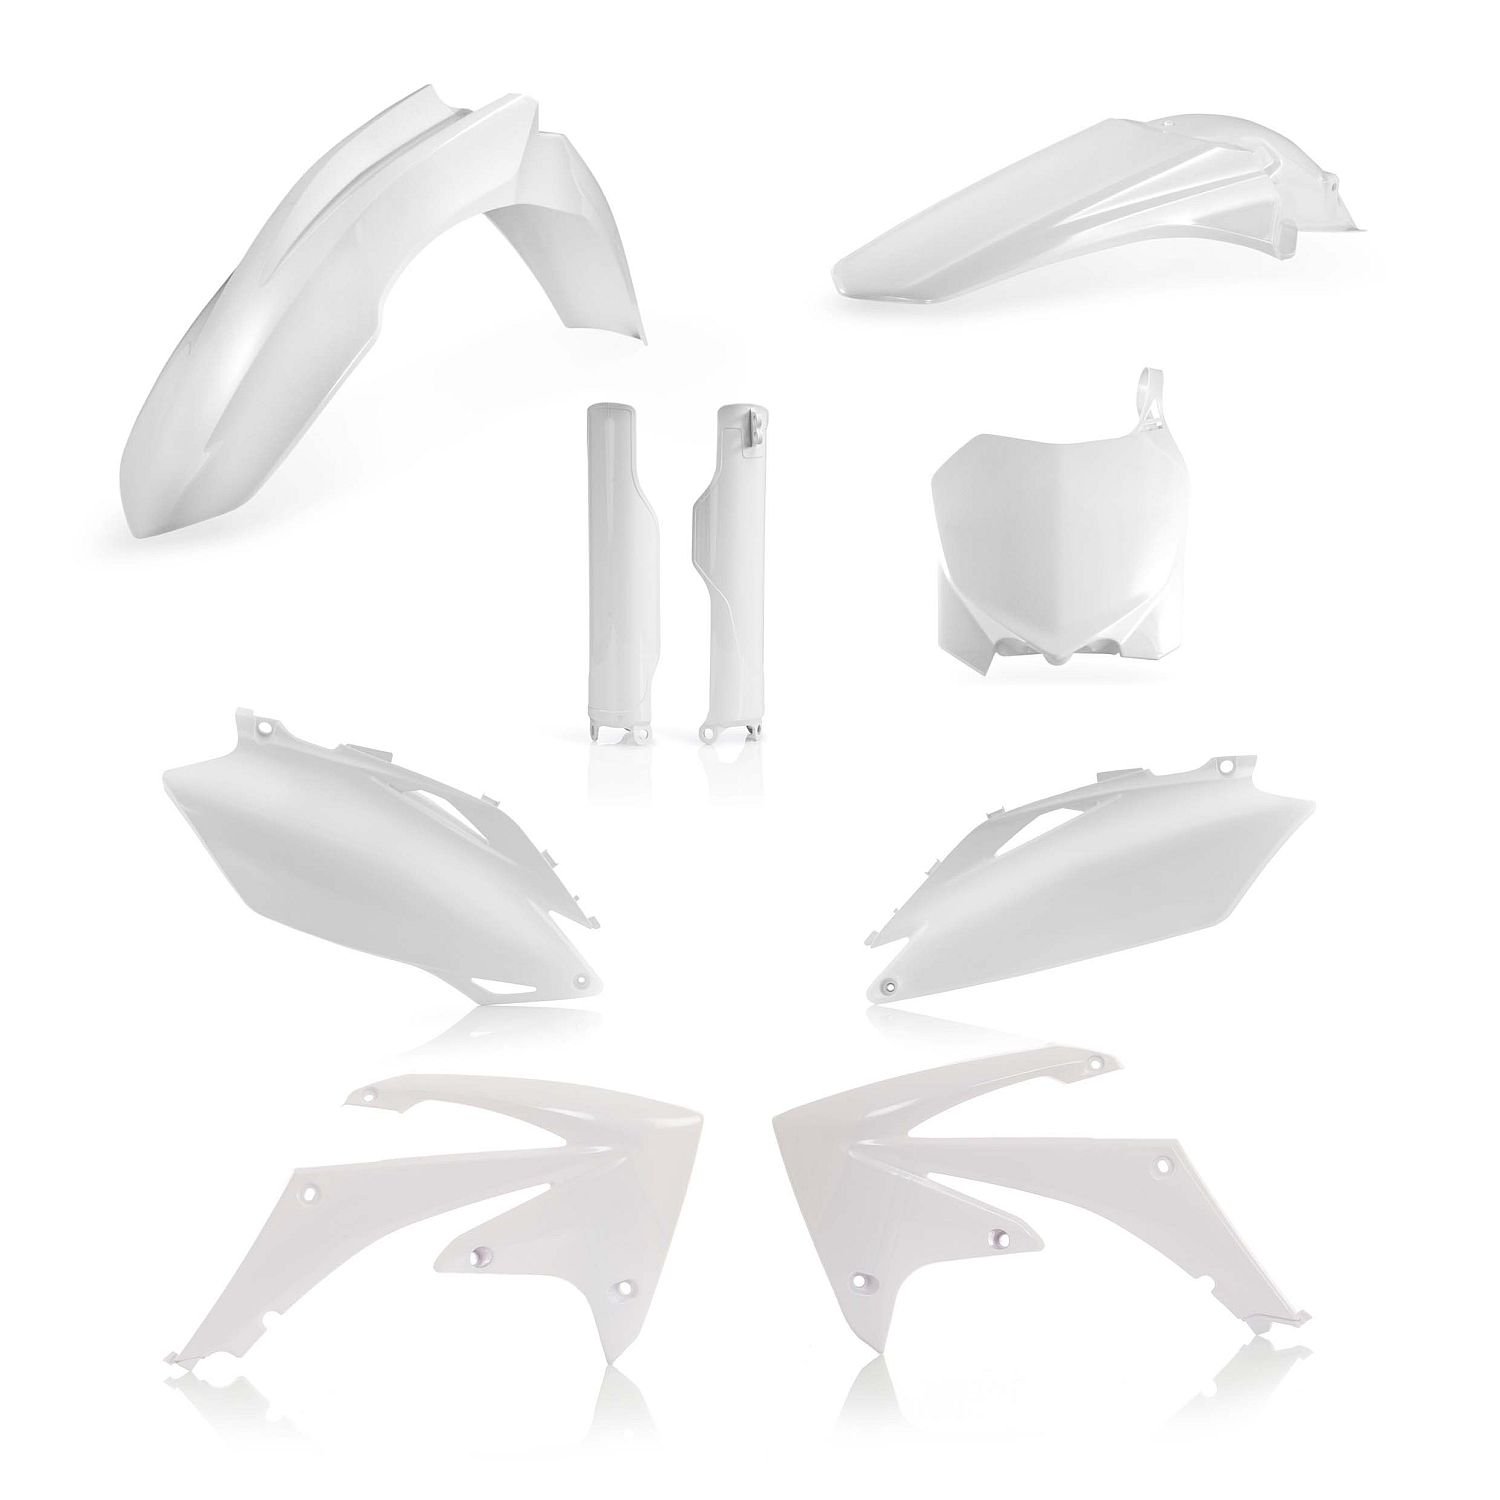 Acerbis Plastic Kit Full-Kit Honda CRF 250 10-13, CRF 450 09-12, White